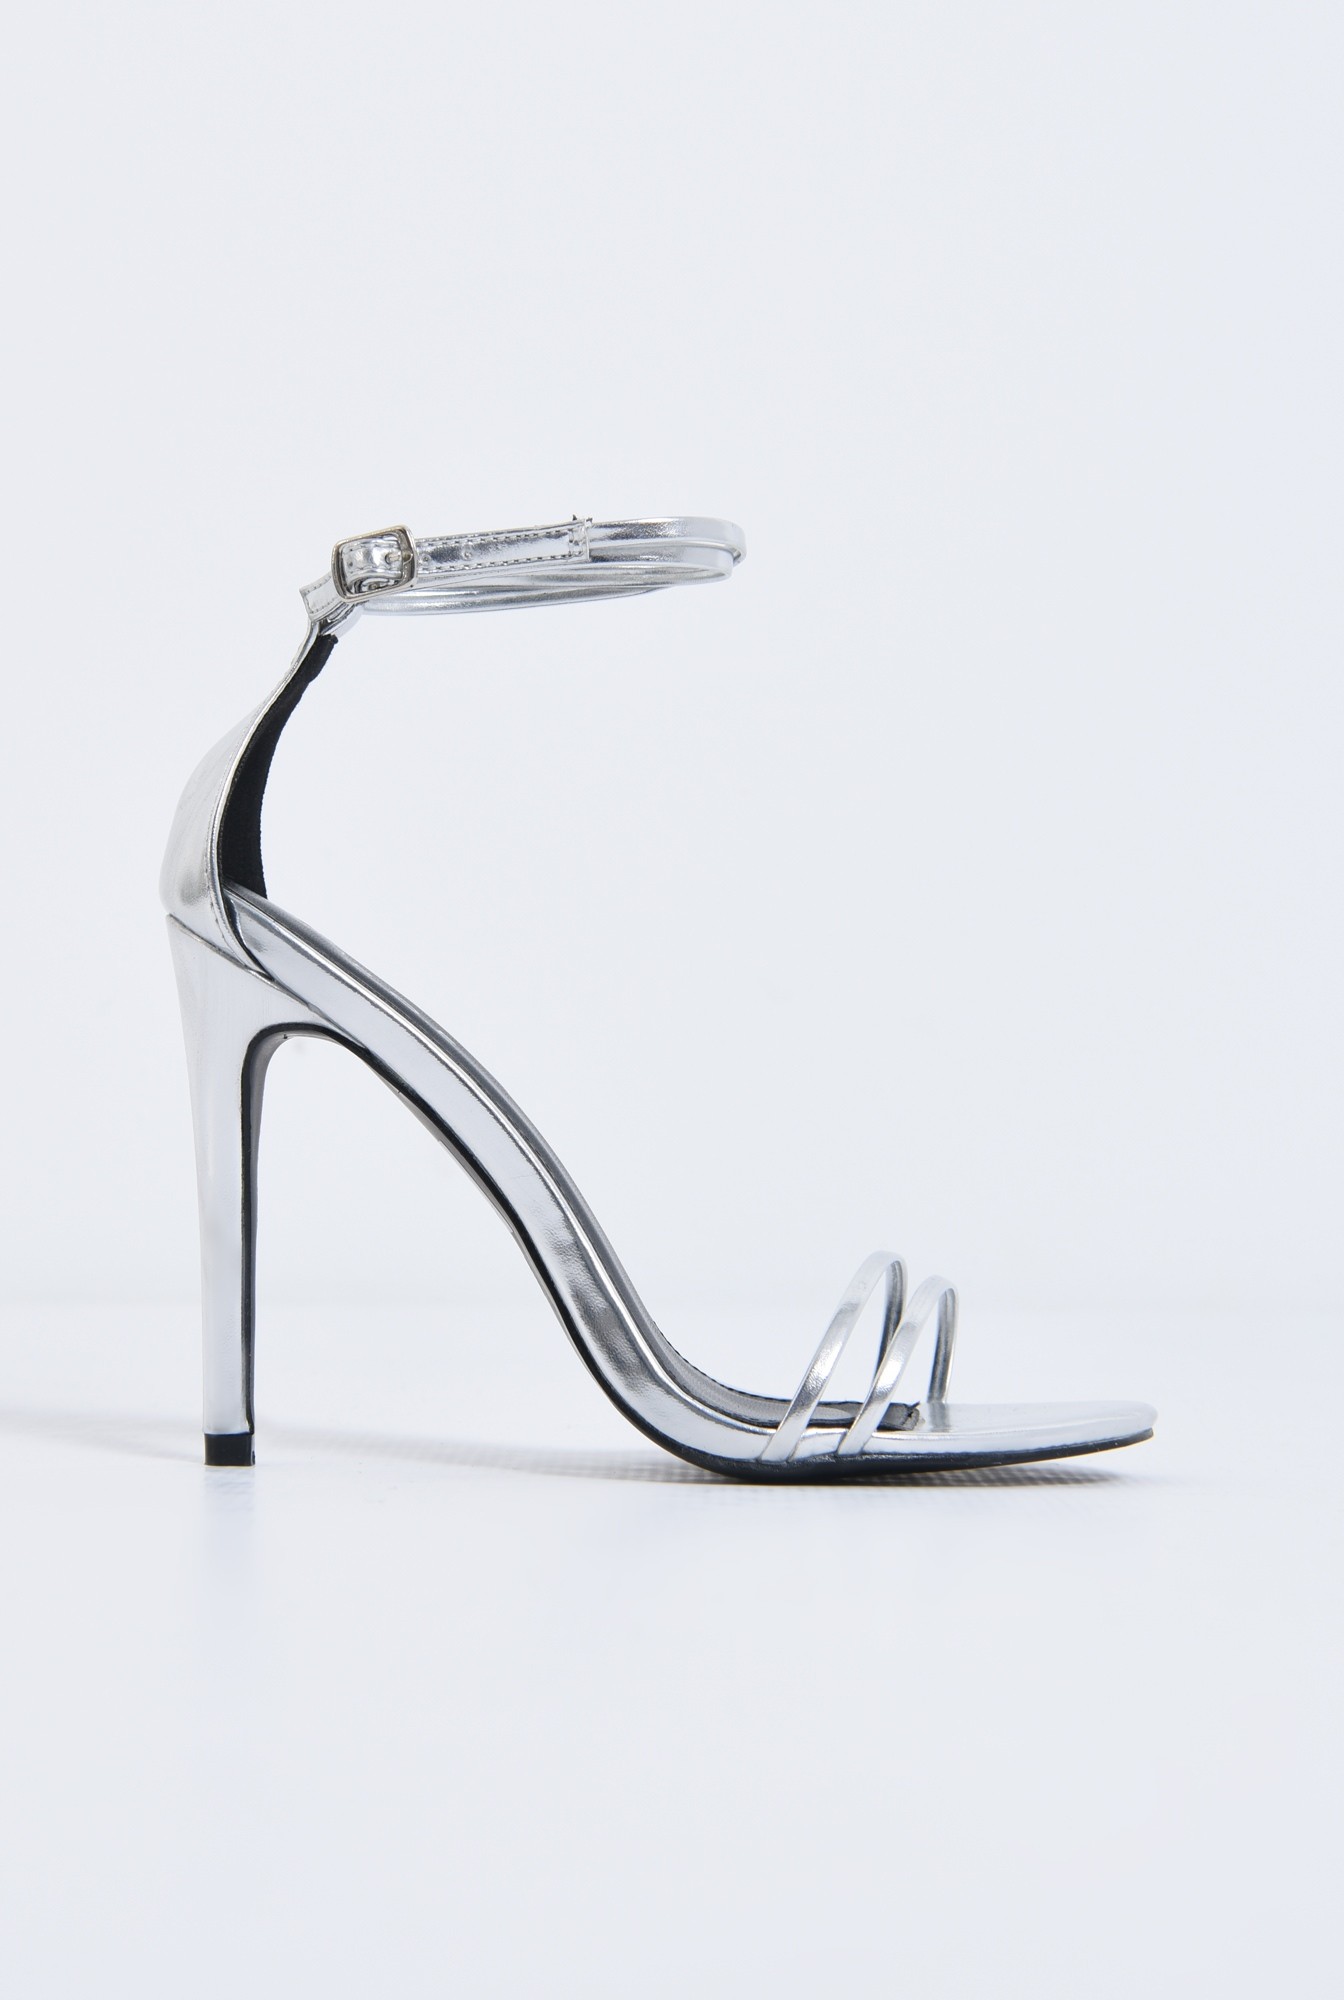 0 - Sandale elegante, argintiu